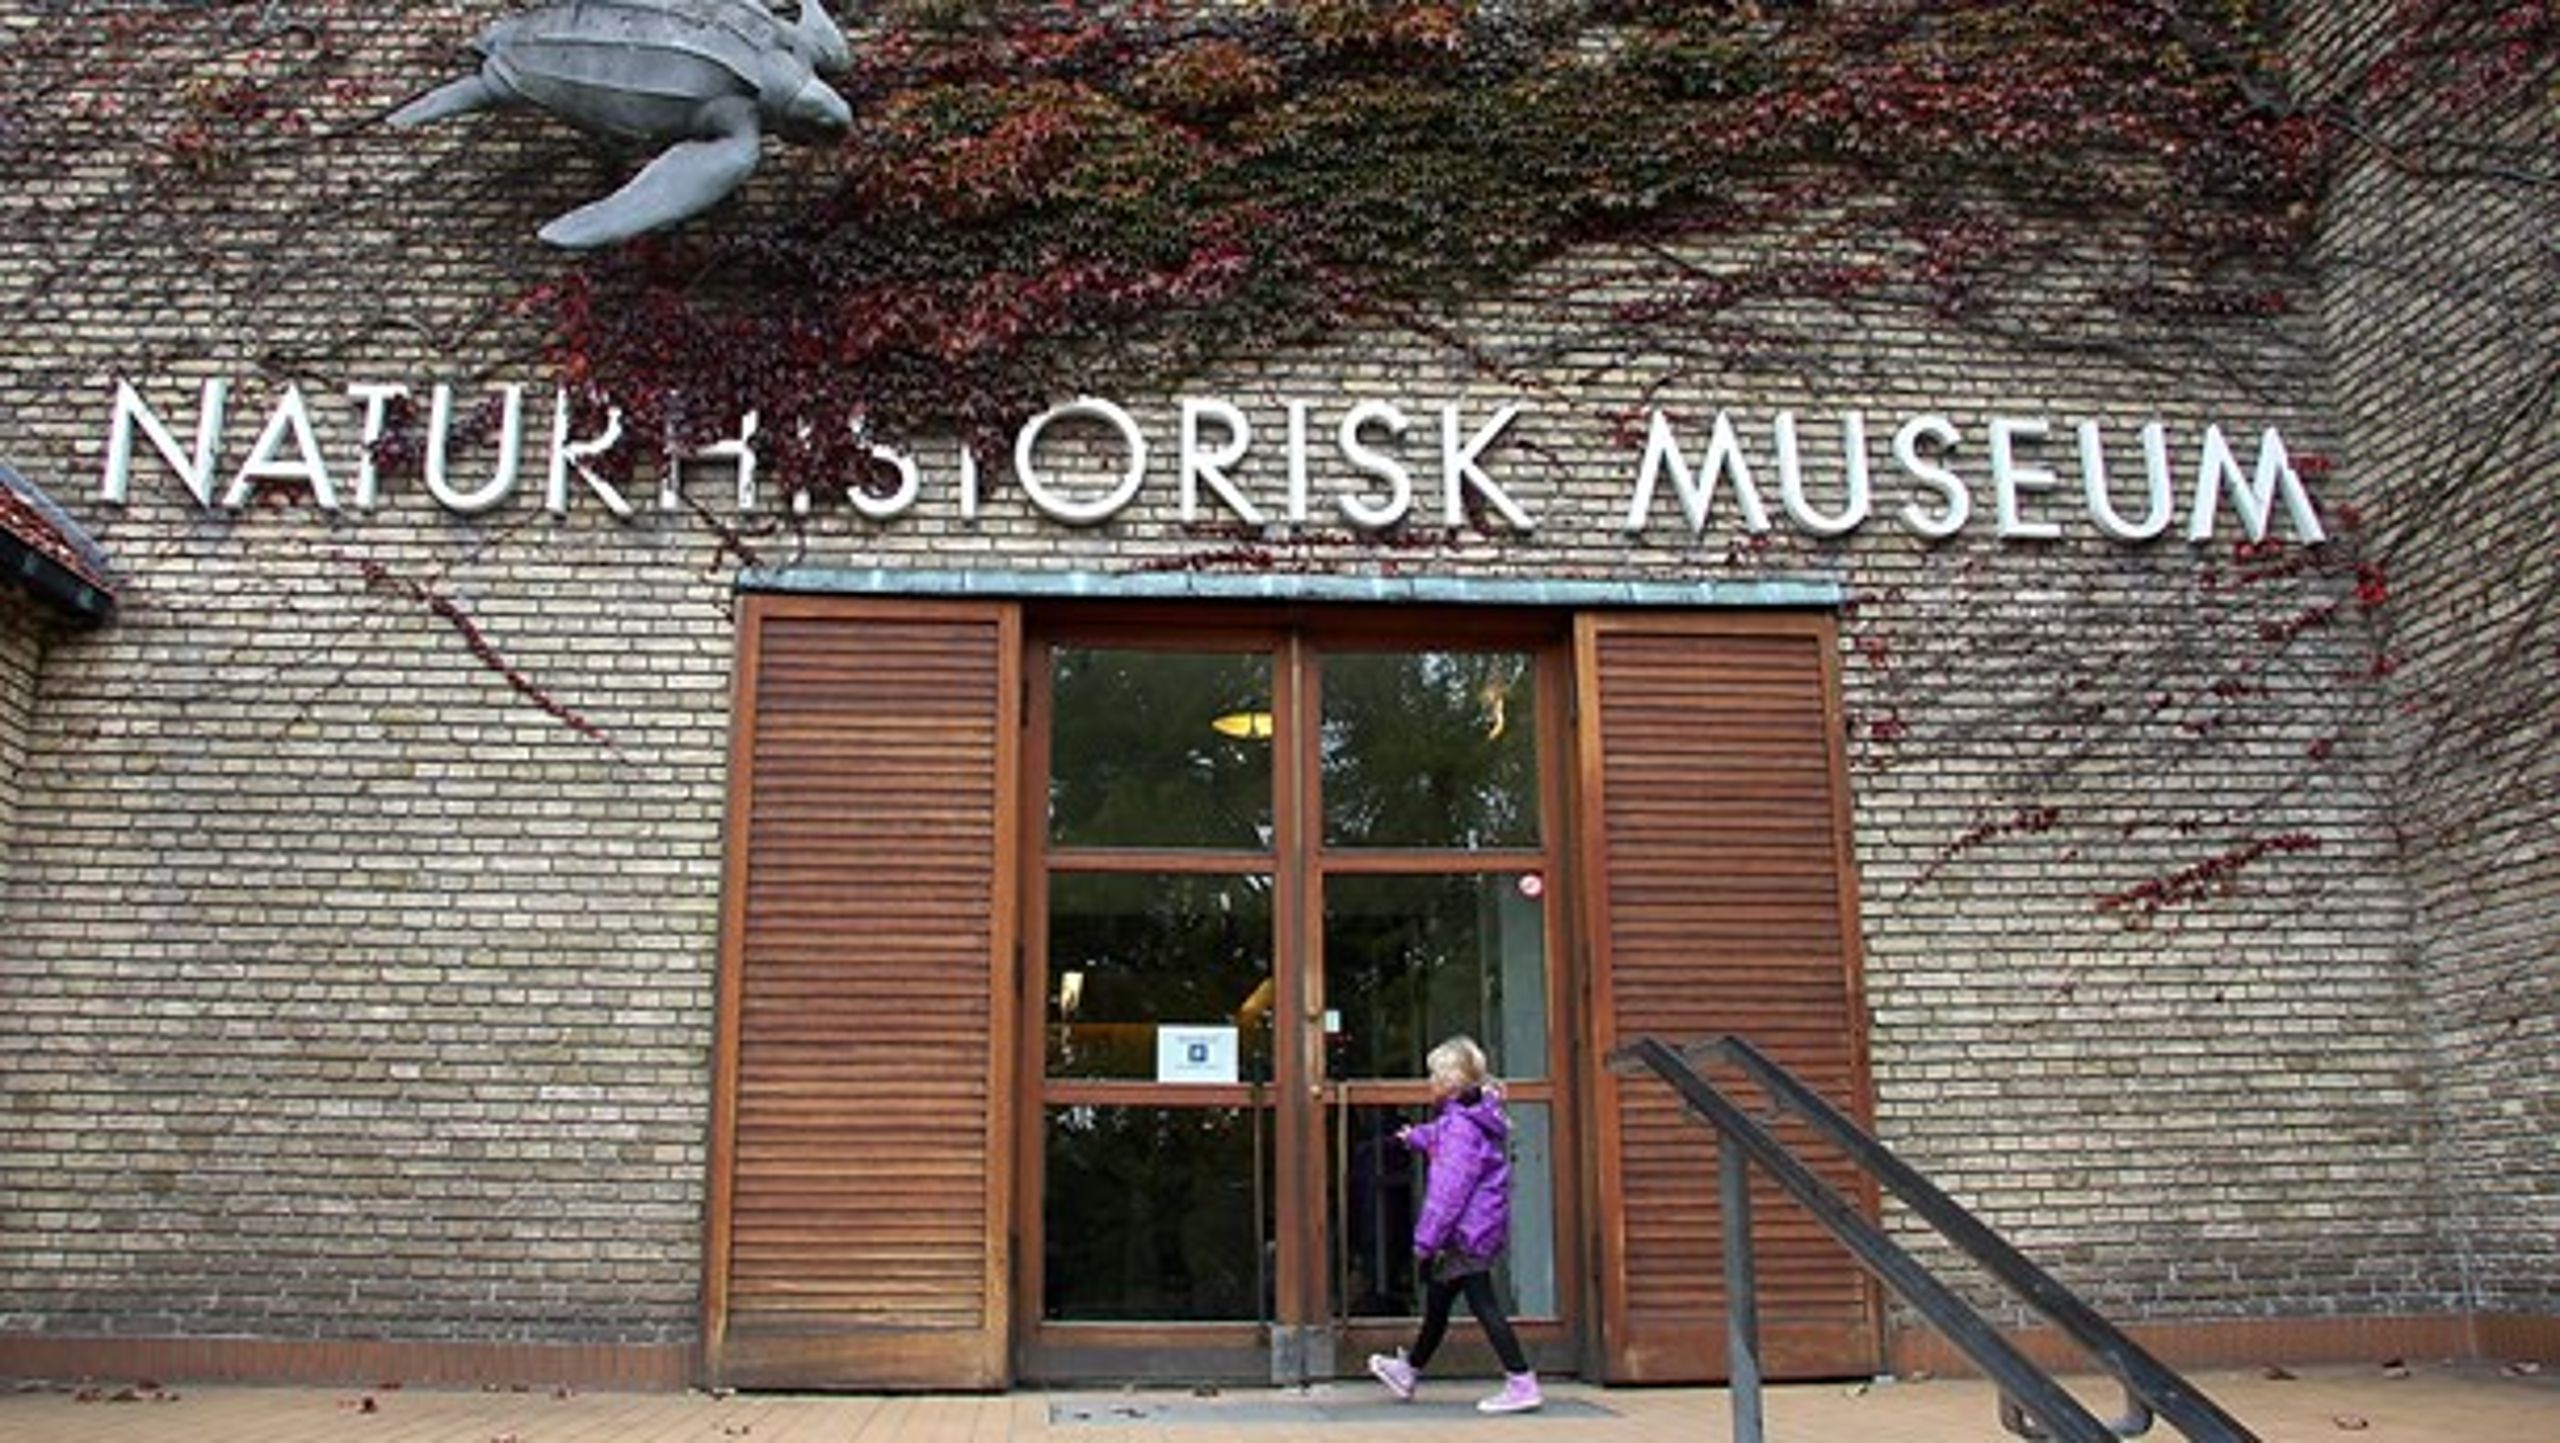 Naturhistorisk Museum i Aarhus kan måske se frem til at få tildelt mere støtte på bekostning af kunstmuseer. Alligevel bør museerne stå sammen, mener direktøren.